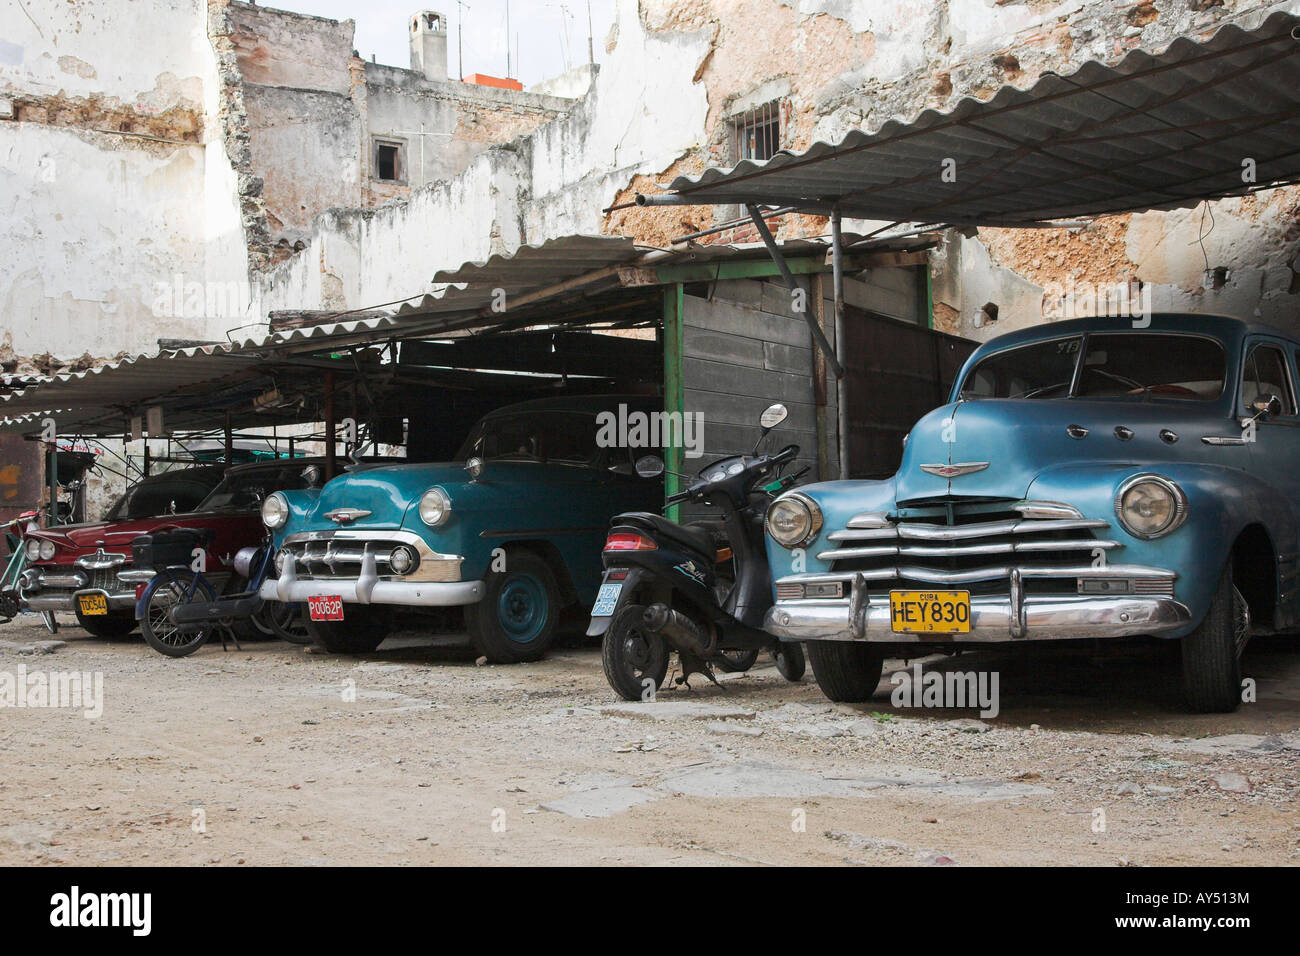 Cuban cars in garage Stock Photo